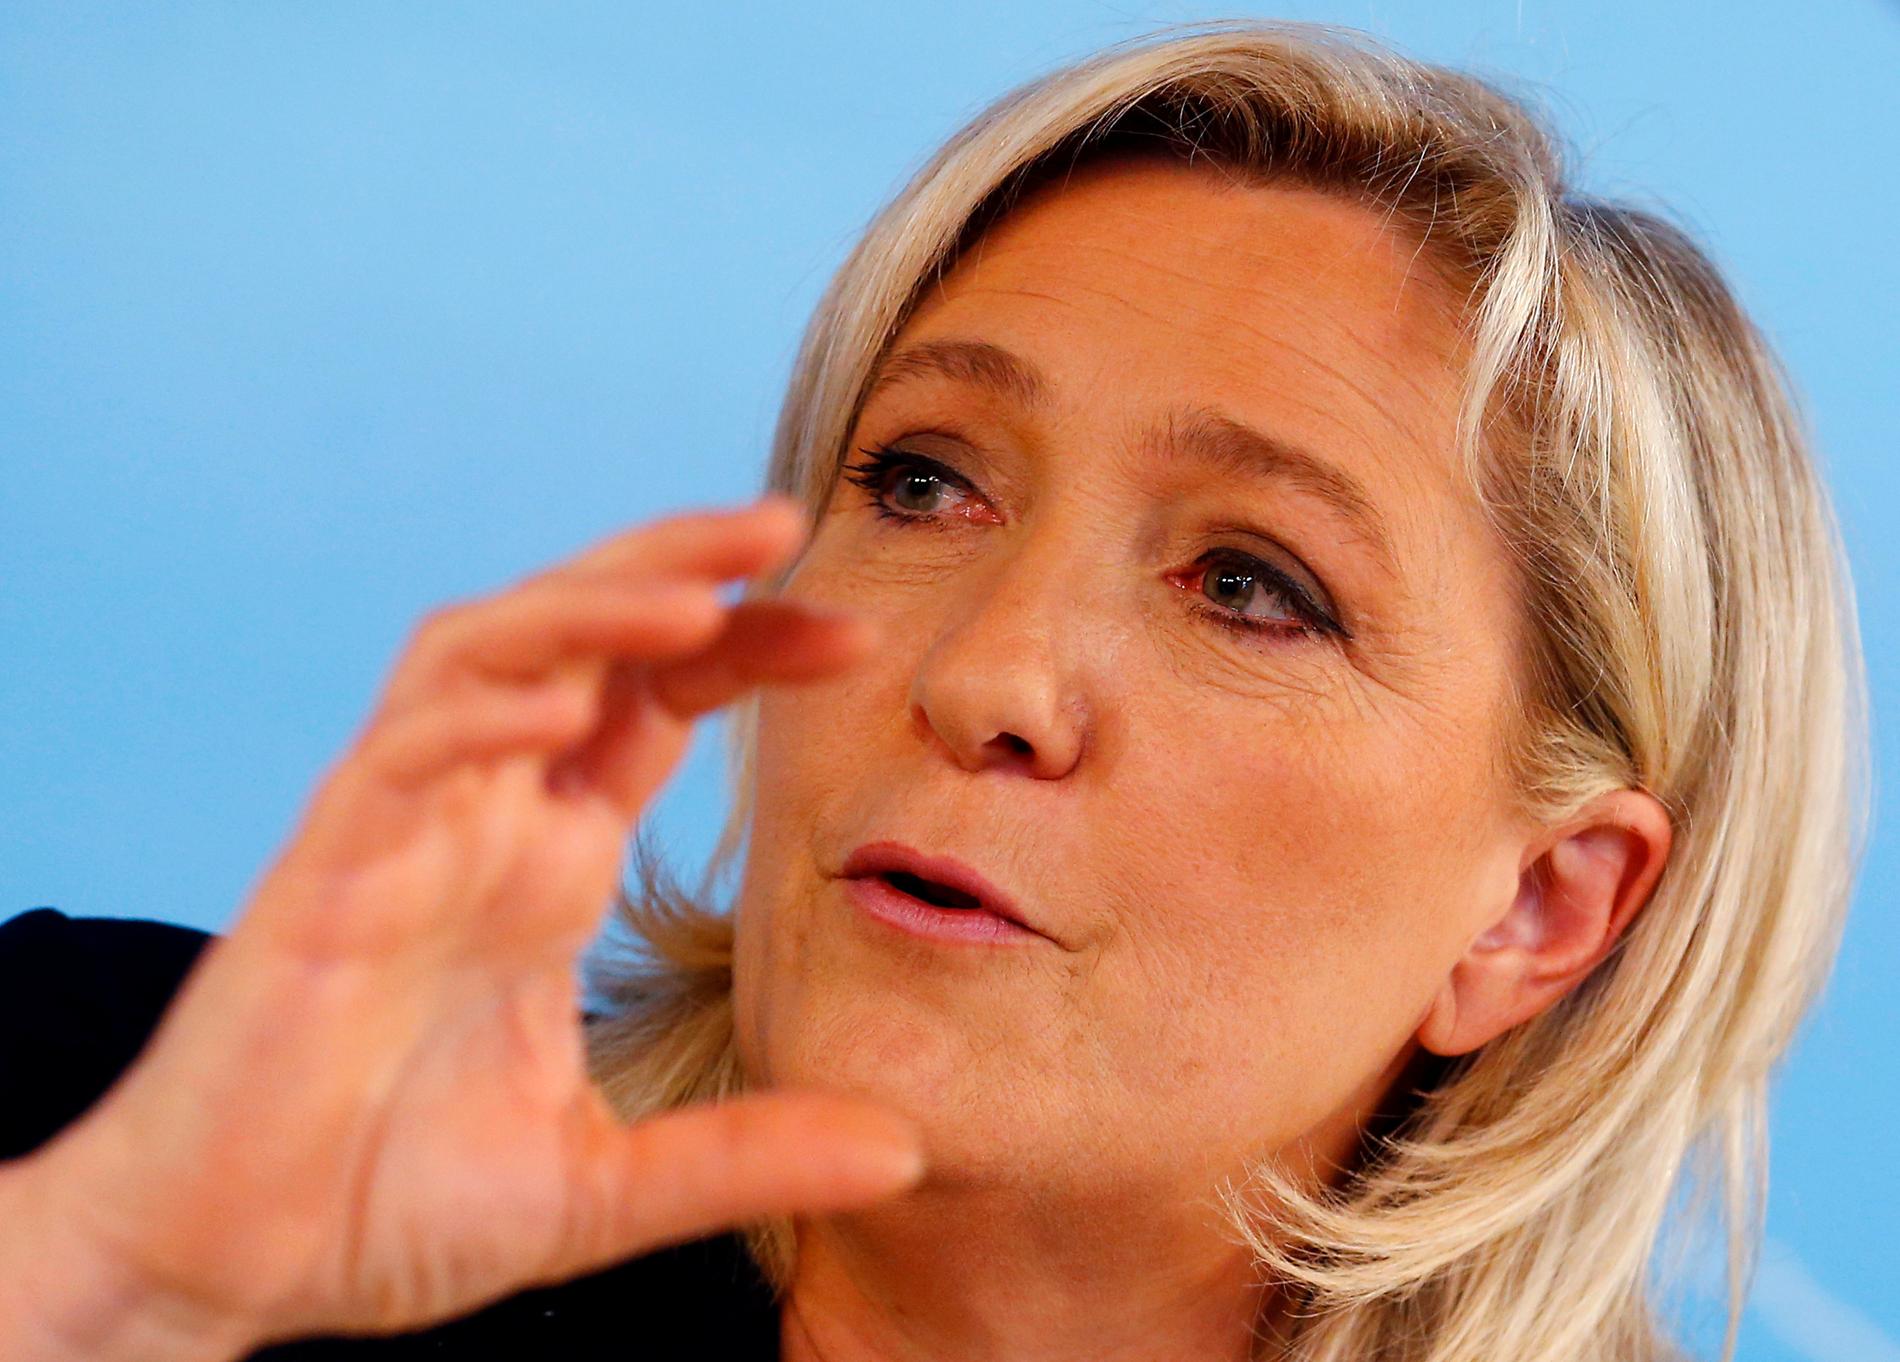 LE PEN: Lederen for det høyrepopulistiske partiet Nasjonal front i Frankrike, Marine Le Pen, jubler over Storbritannias utmelding av EU, i likhet med andre europeiske partier på ytre høyre fløy.